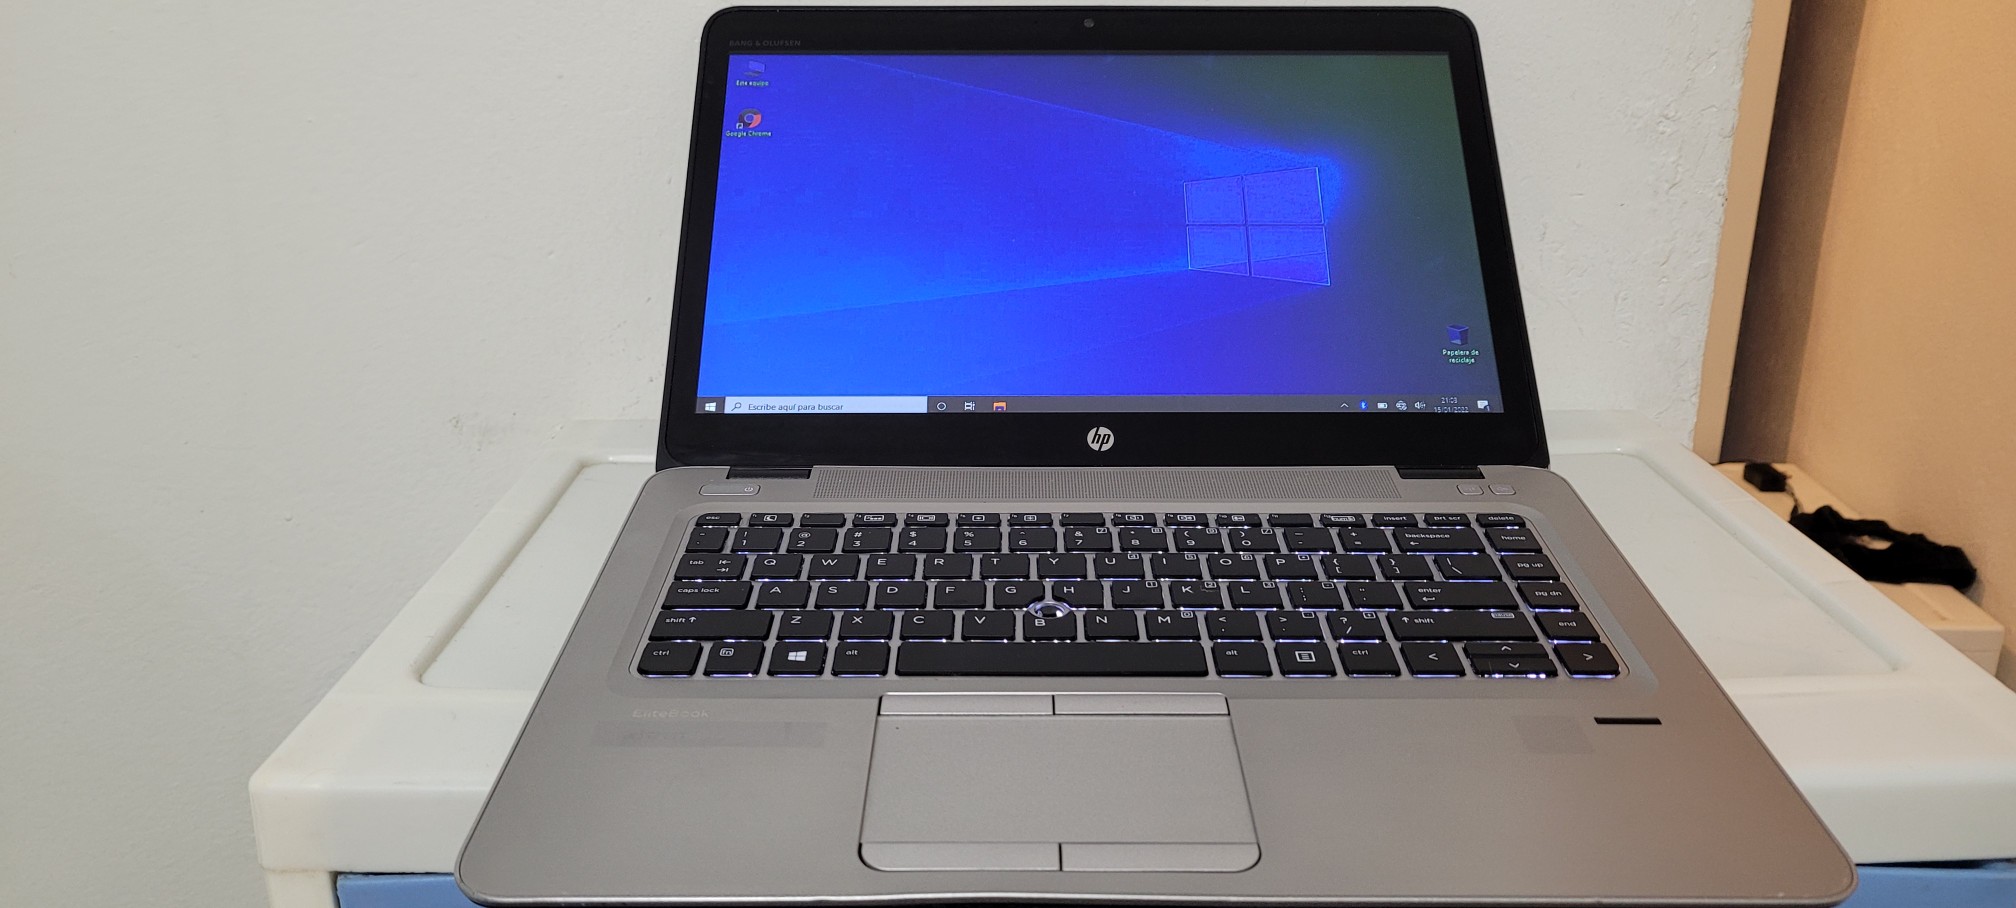 computadoras y laptops - Laptop hp 14 Pulg Core i5 6ta Ram 8gb ddr4 Disco 128gb y 320gb hdmi